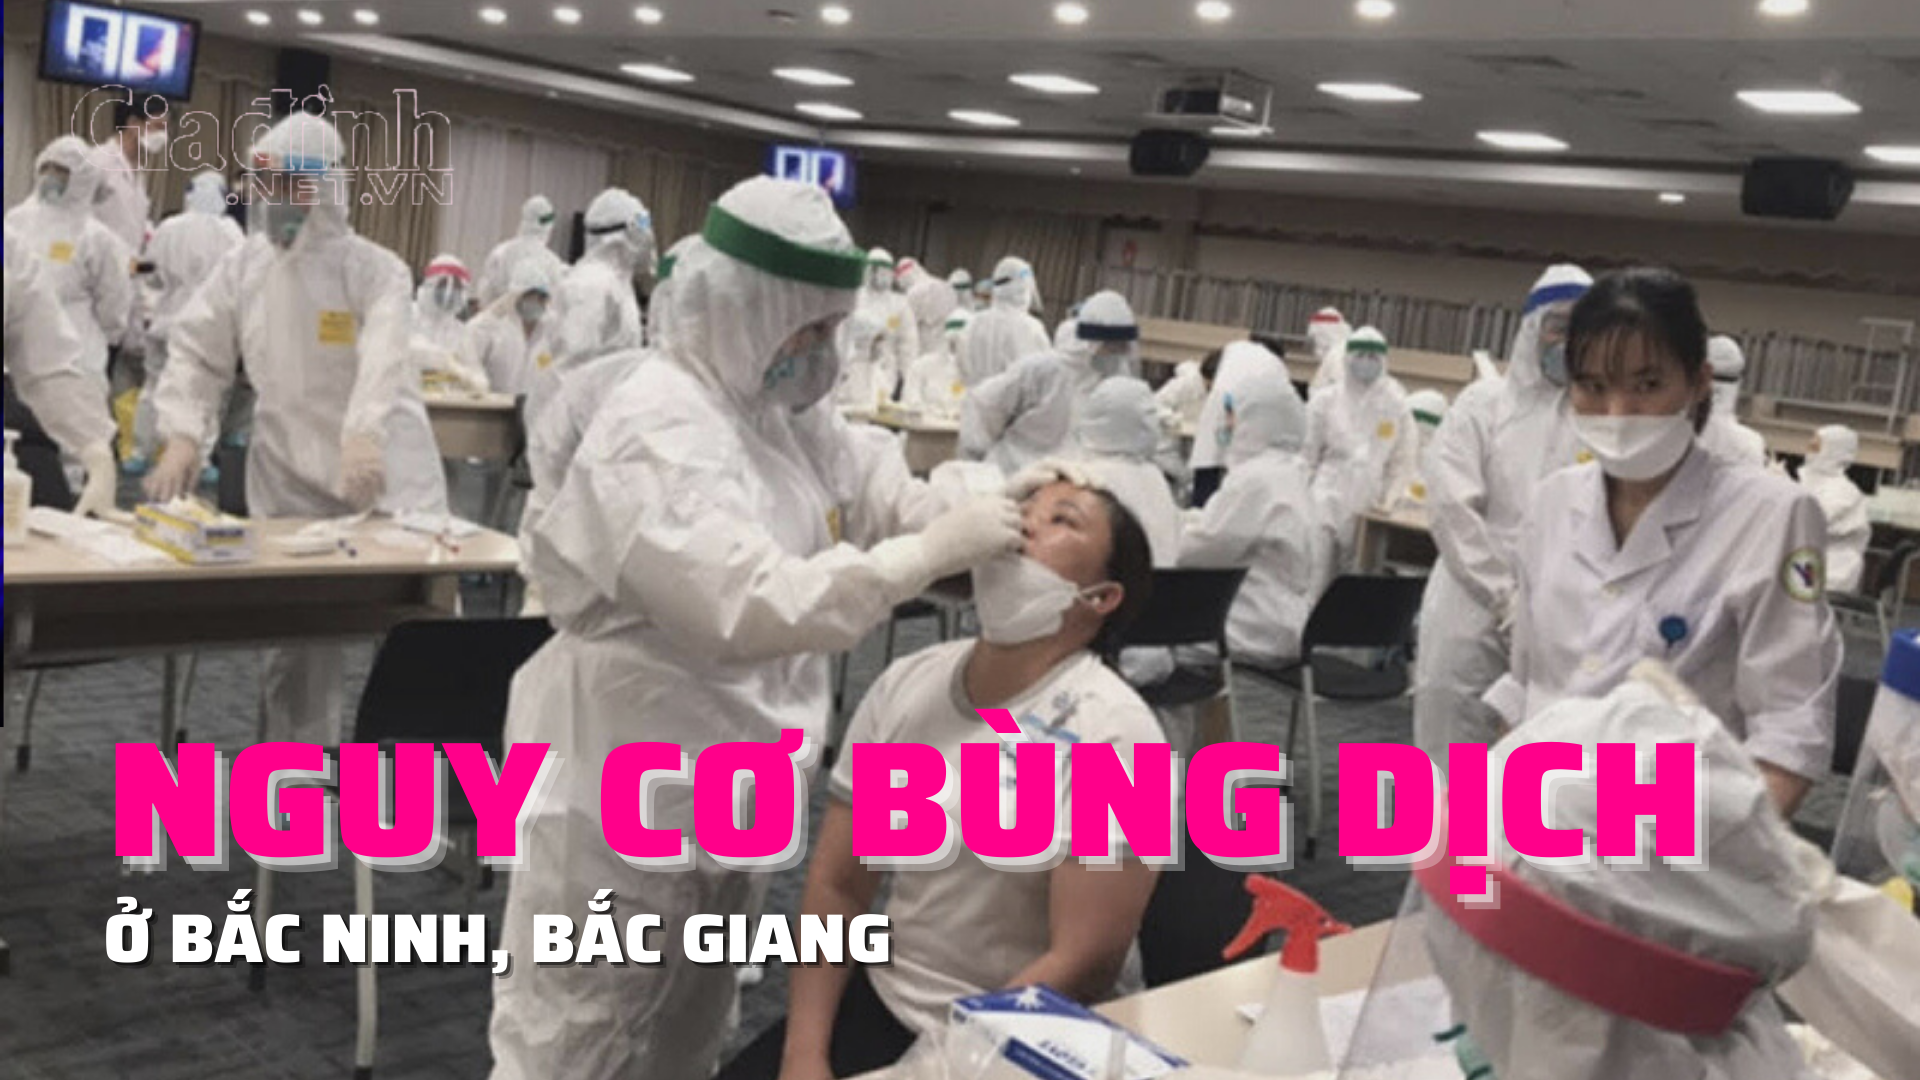 Bắc Ninh, Bắc Giang có hàng trăm ca COVID-19 mới, nguy cơ bùng dịch COVID-19